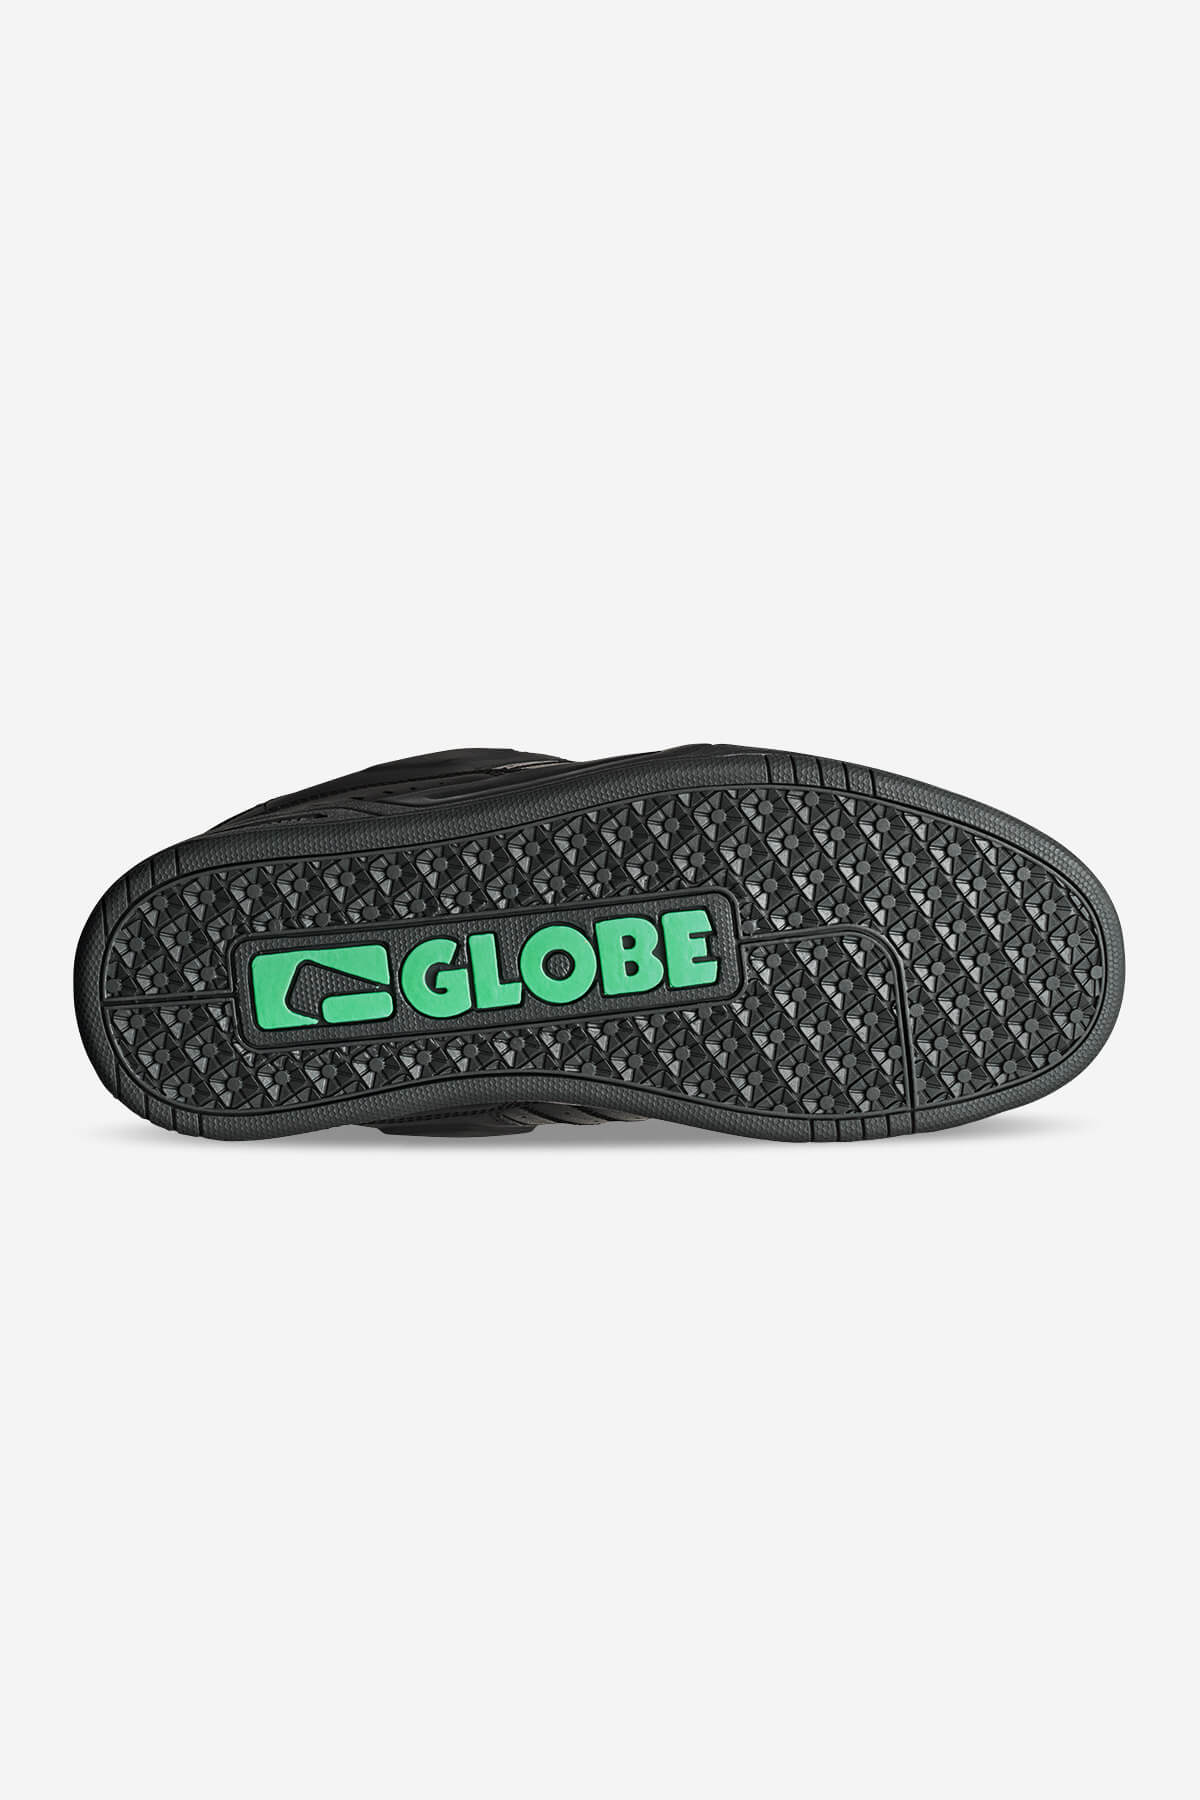 Globe - Fusion - Phantom Dip - skateboard Scarpe